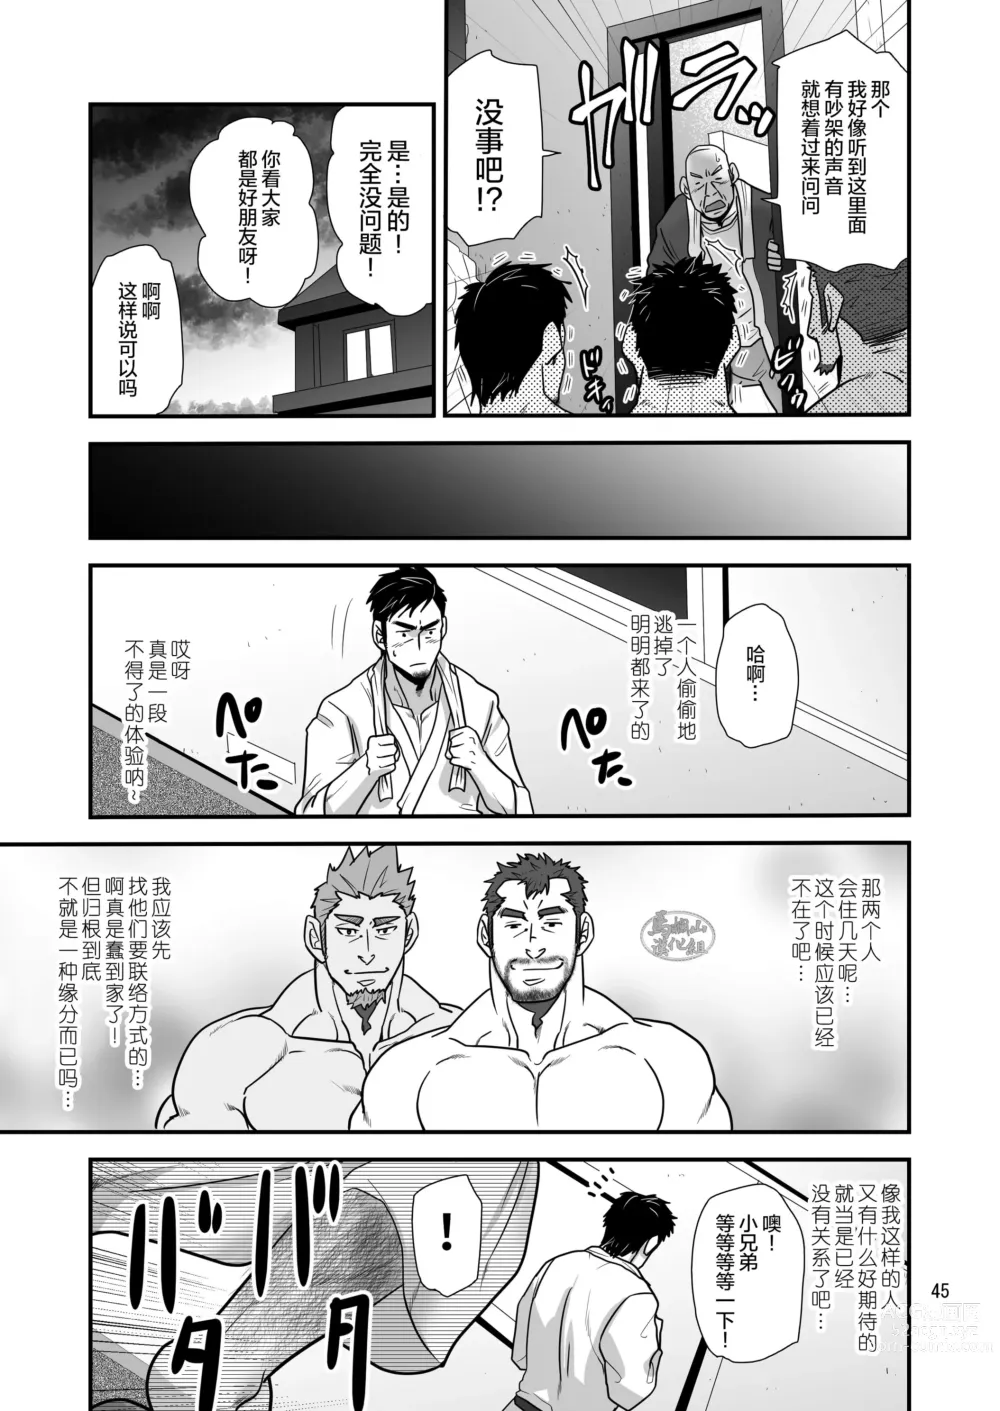 Page 45 of manga 松武互悦同衆!!_旅の恥はヌキすて